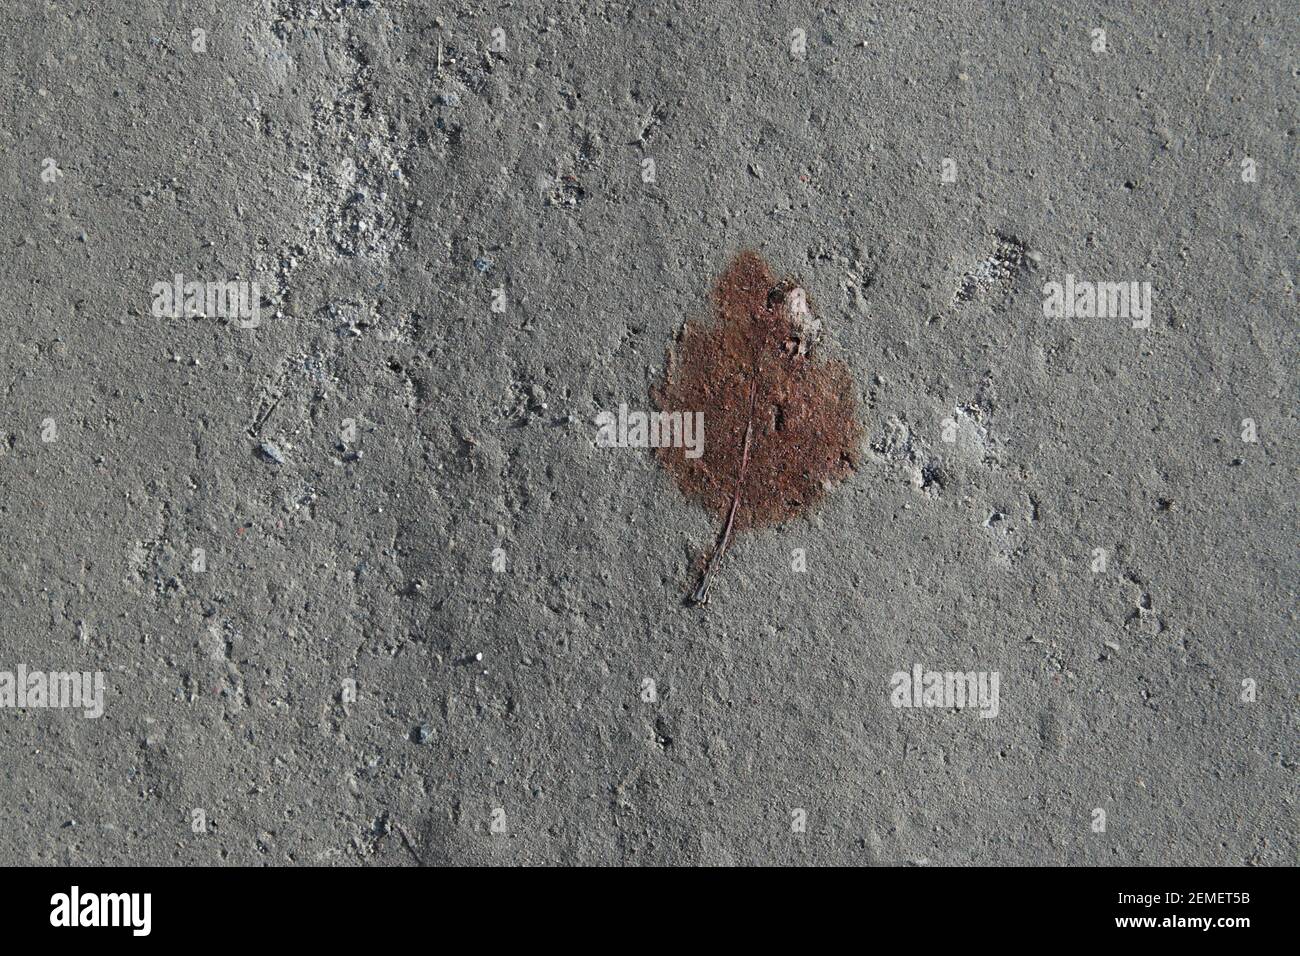 Fotografia astratta della natura: Foglia bruna caduta quasi fossilizzata su terreno grigio duro della città; foto a colori. Foto Stock